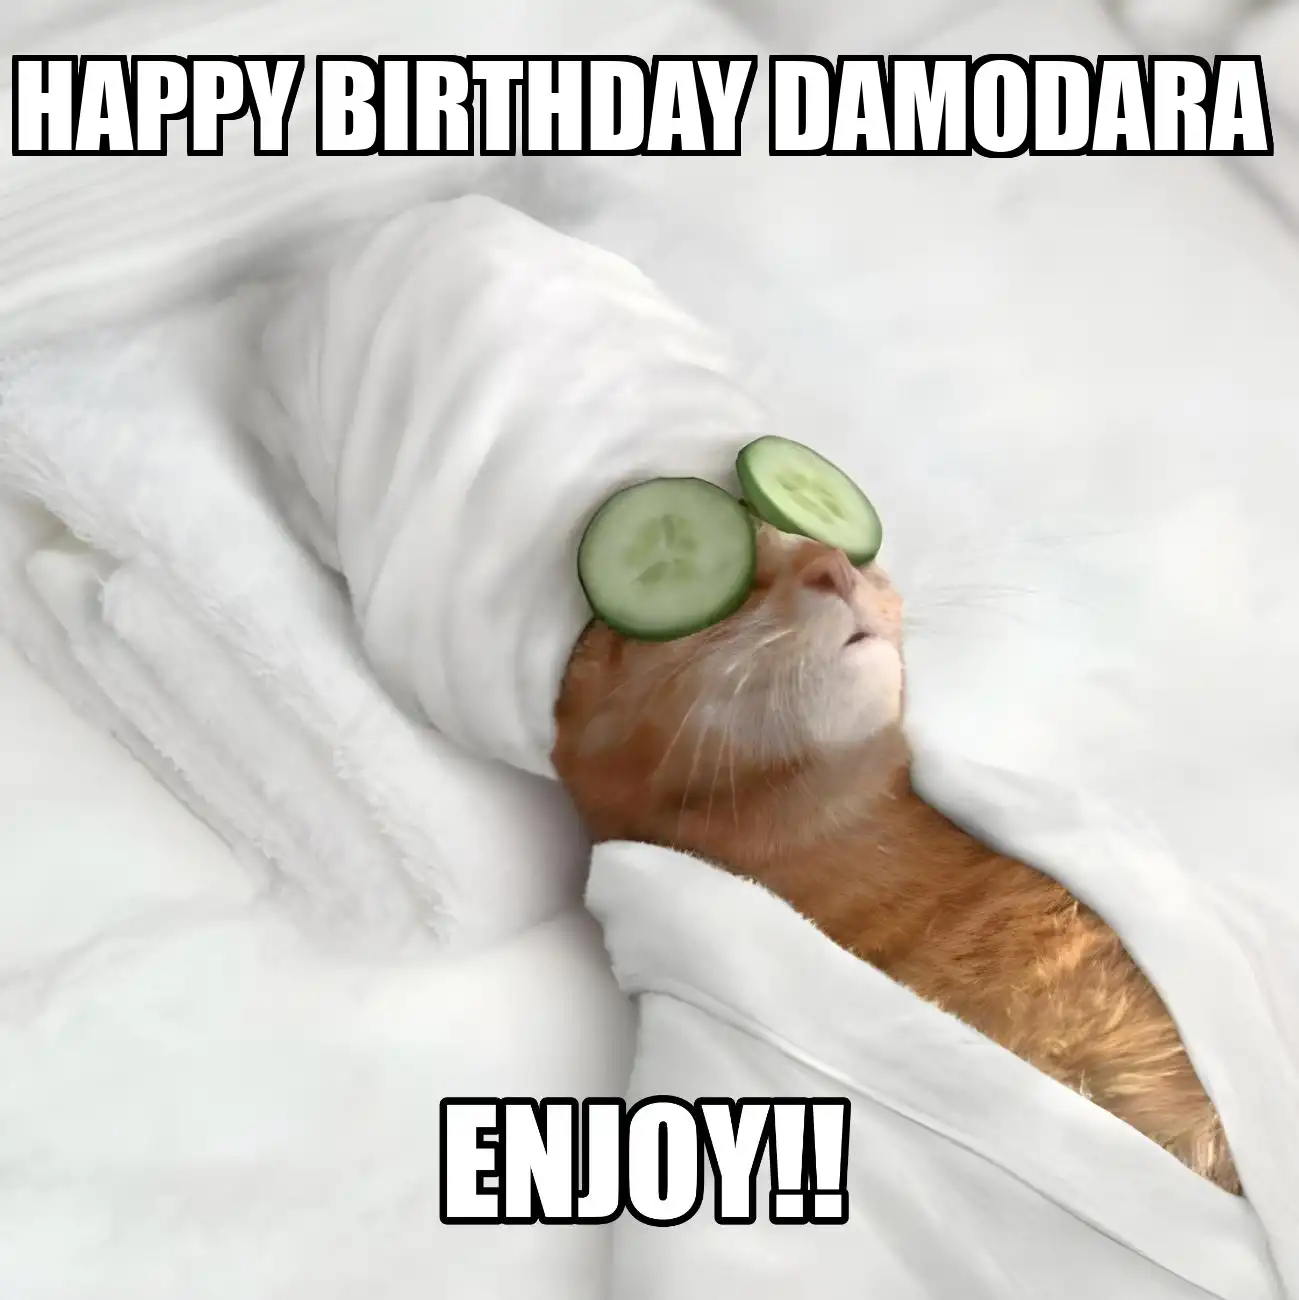 Happy Birthday Damodara Enjoy Cat Meme